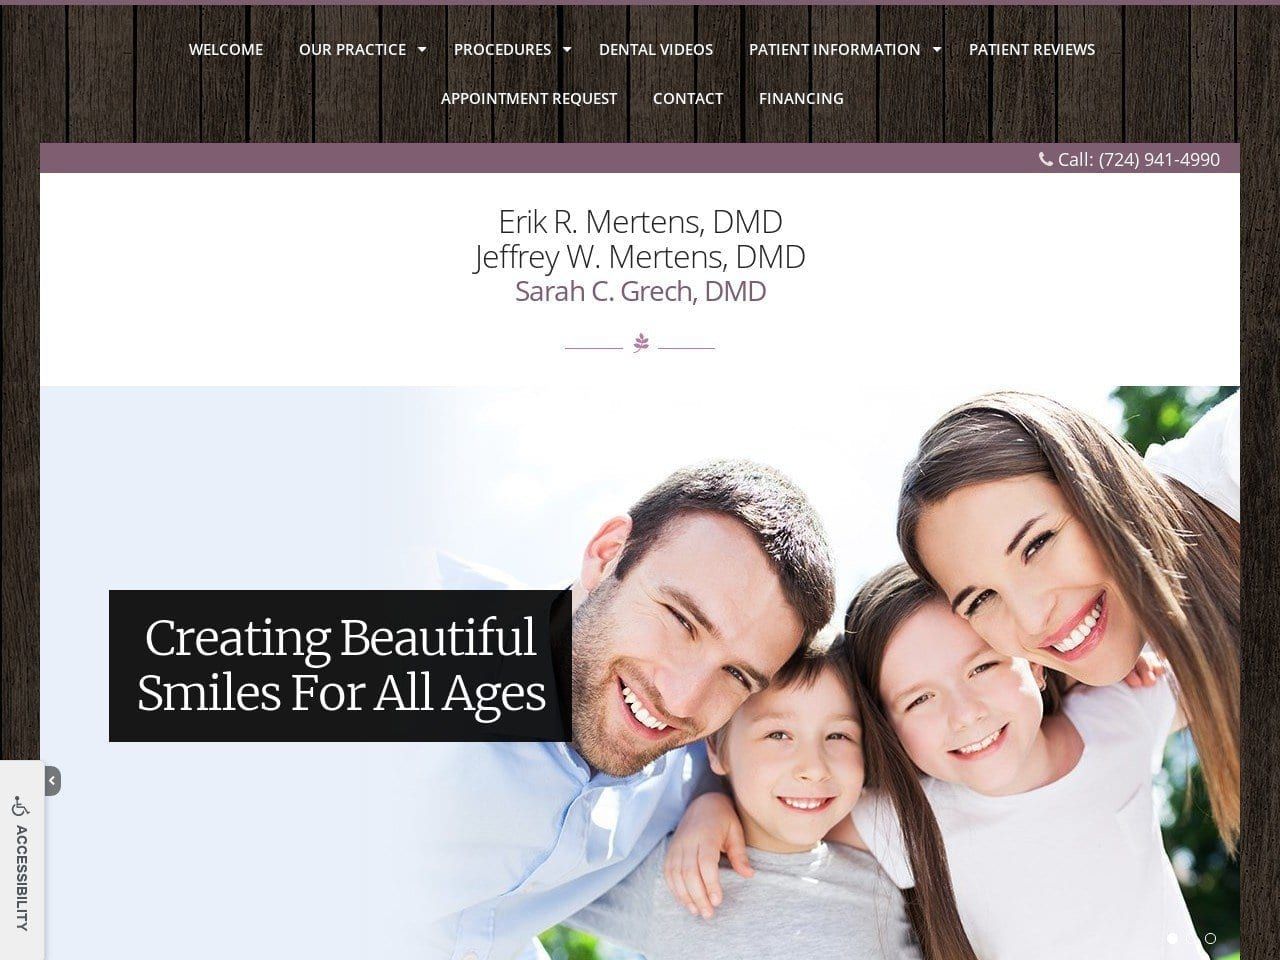 Mertens Dental Associates Website Screenshot from mertensdental.com